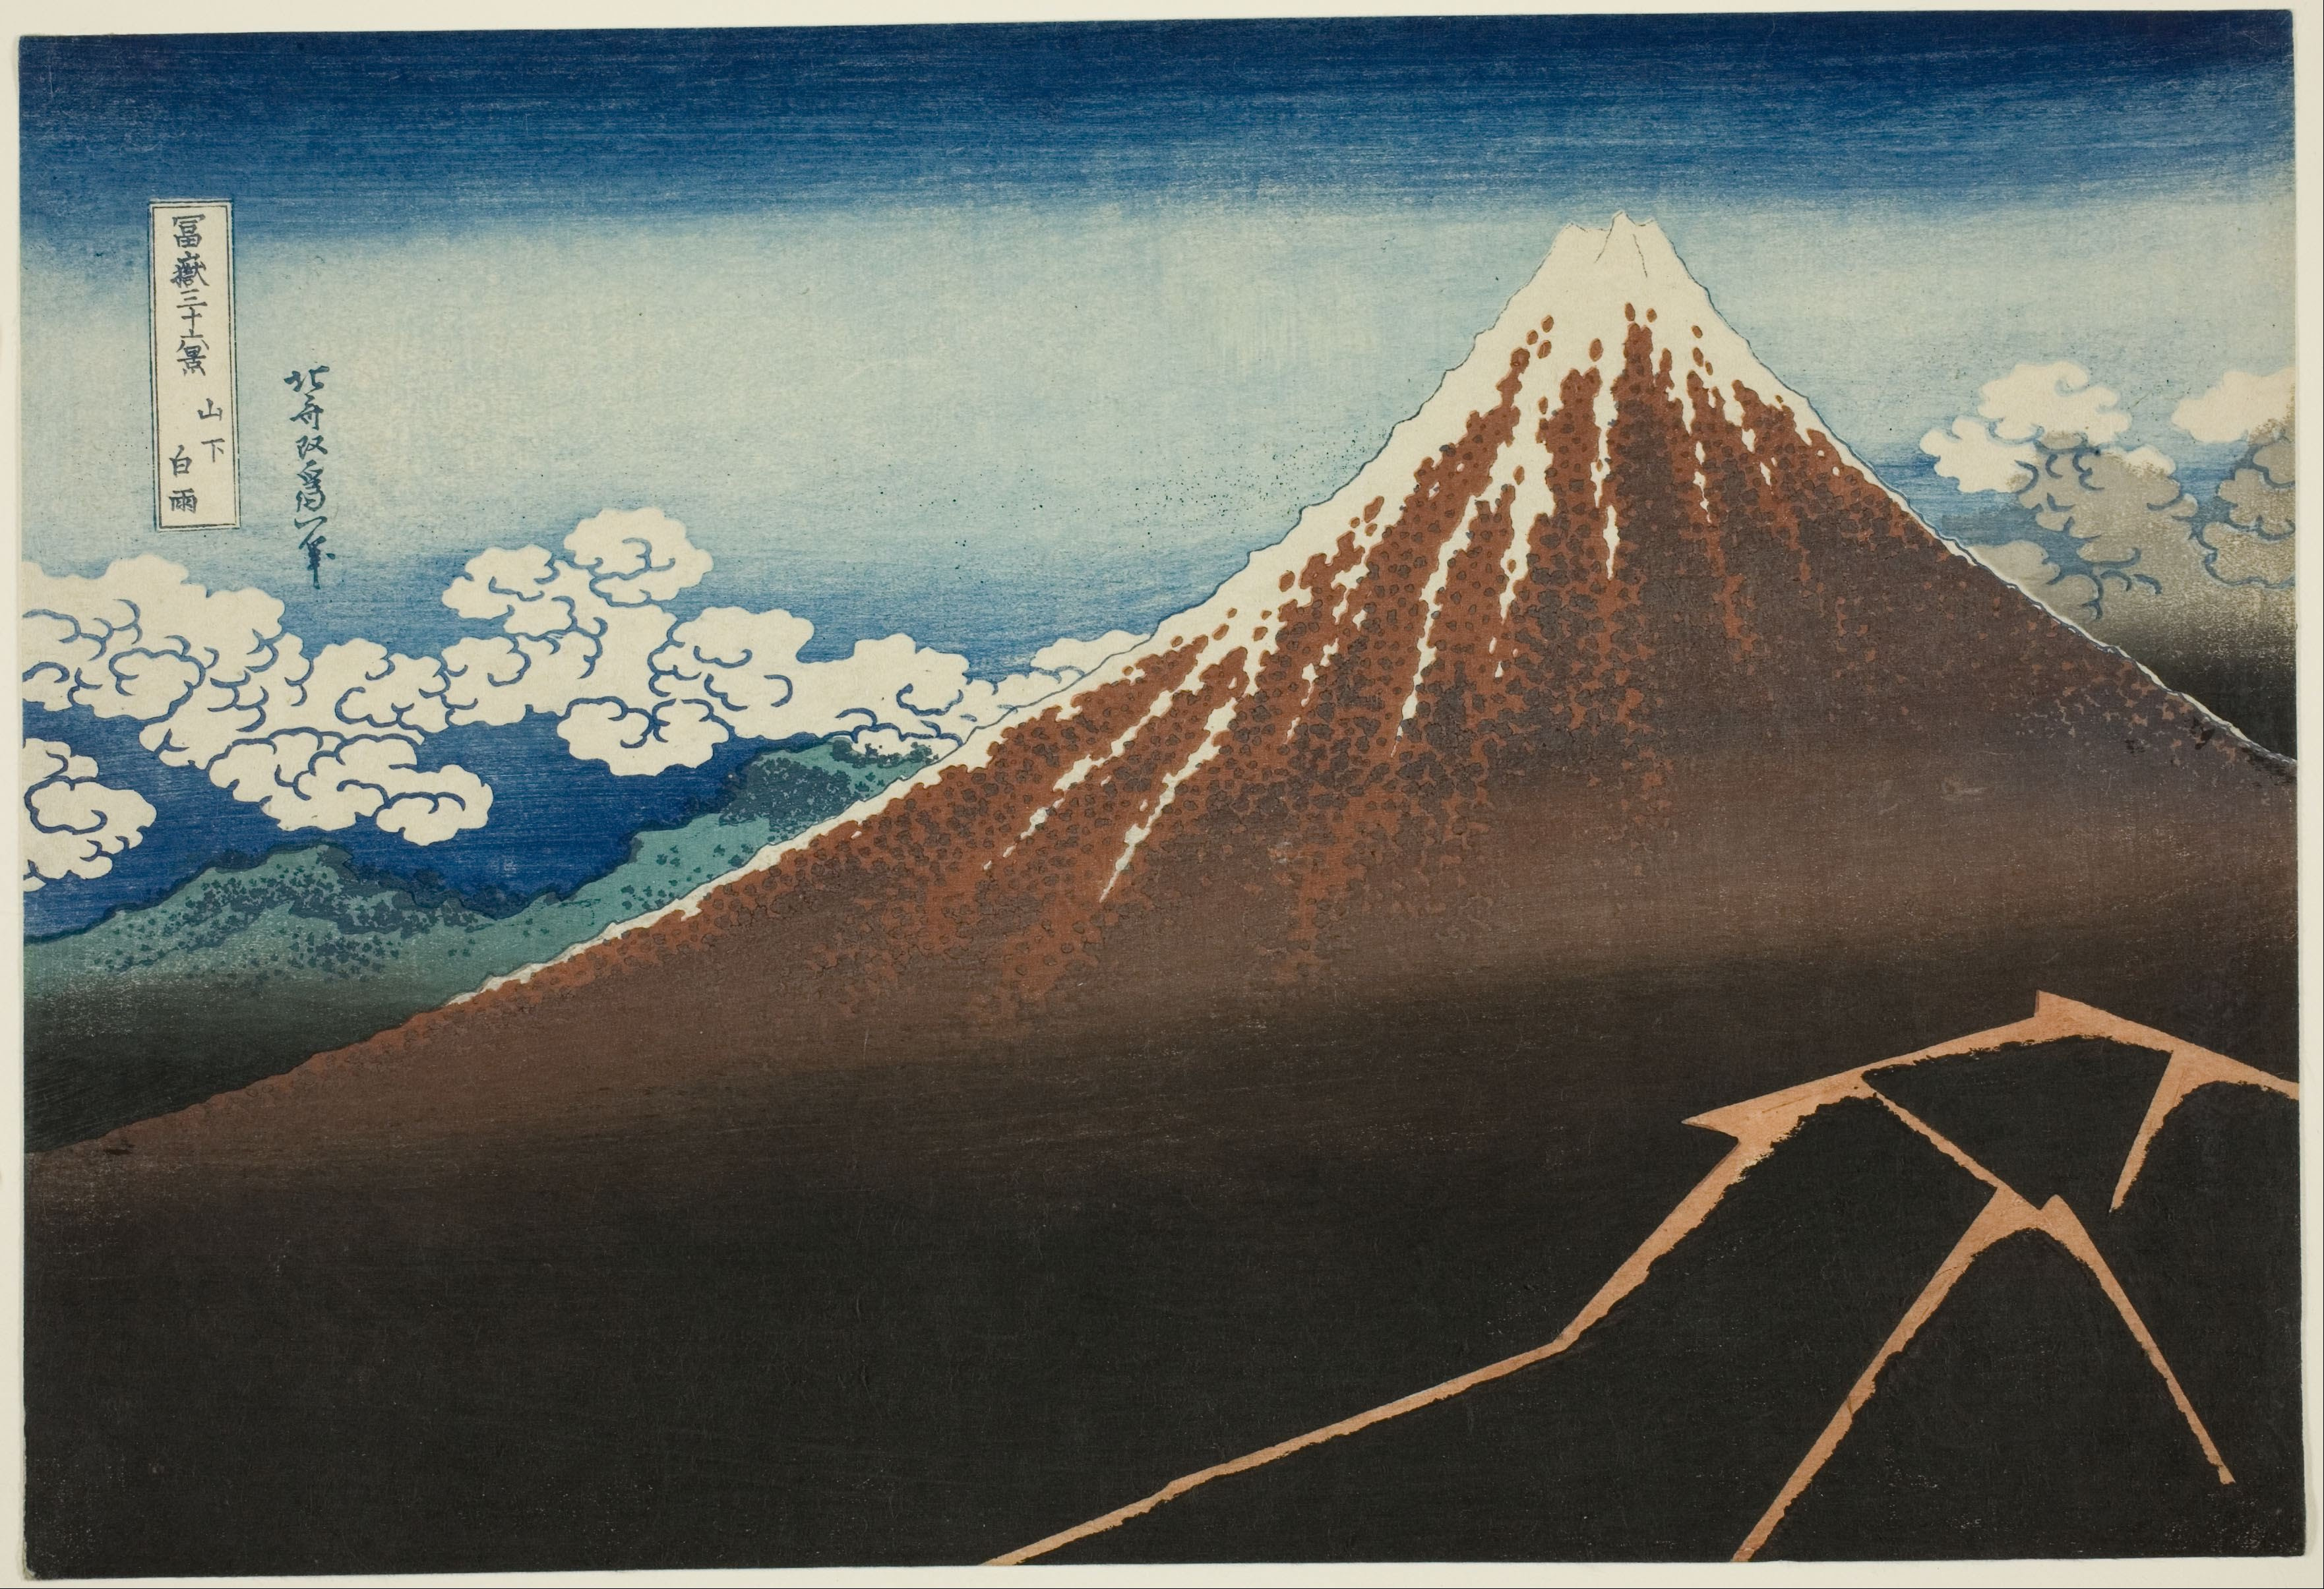 山下白雨 by Katsushika Hokusai - 1830年から1832年頃 - 10 1/8 × 14 9/16 インチ 